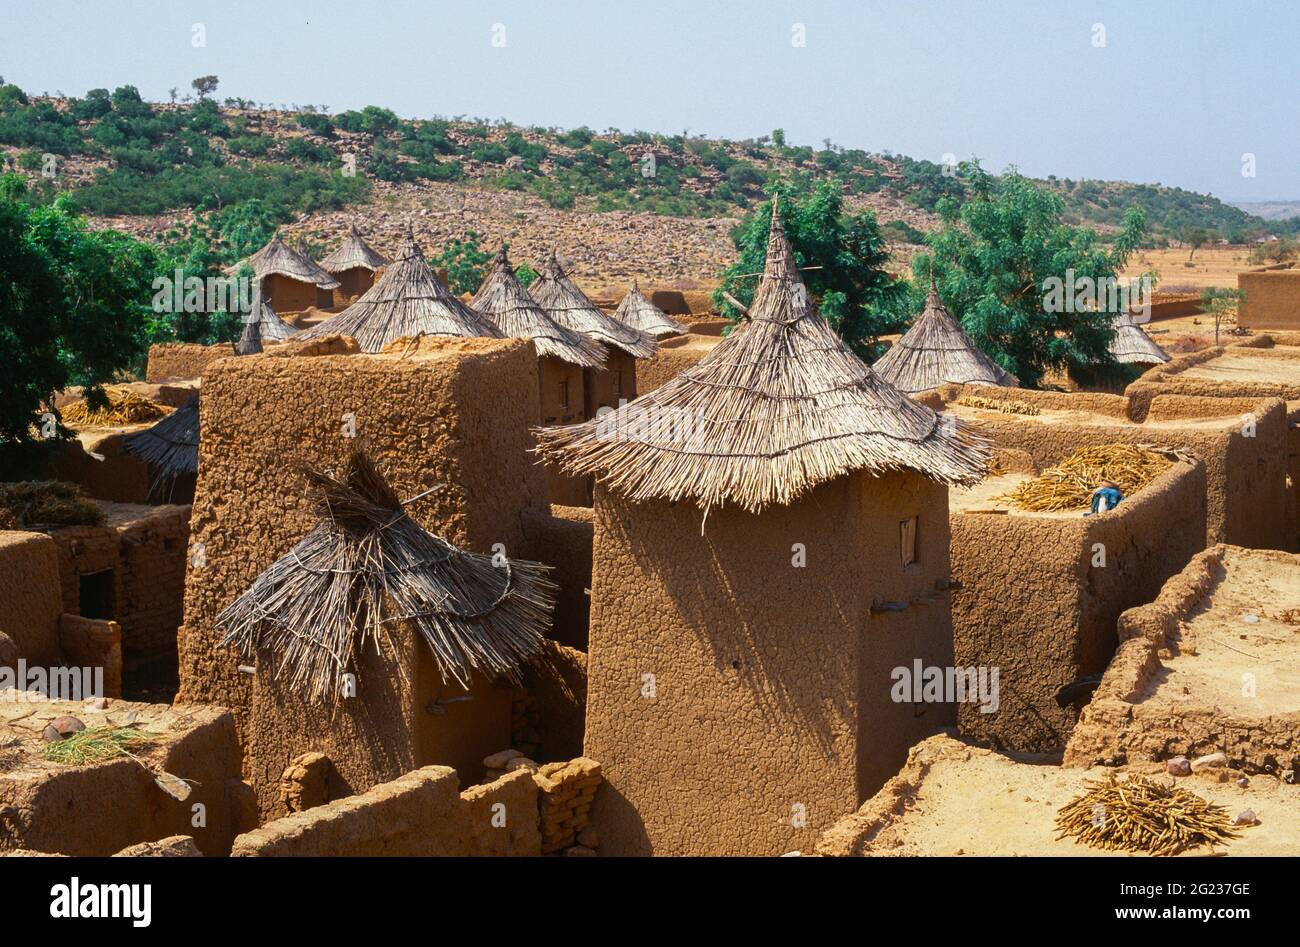 Tradizionali tombe e case di Dogon dal tetto in paglia, con essiccazione di miglio sulle torrefere piatte. Kani-Kombole Village, regione di Mopti, Mali, Africa occidentale Foto Stock